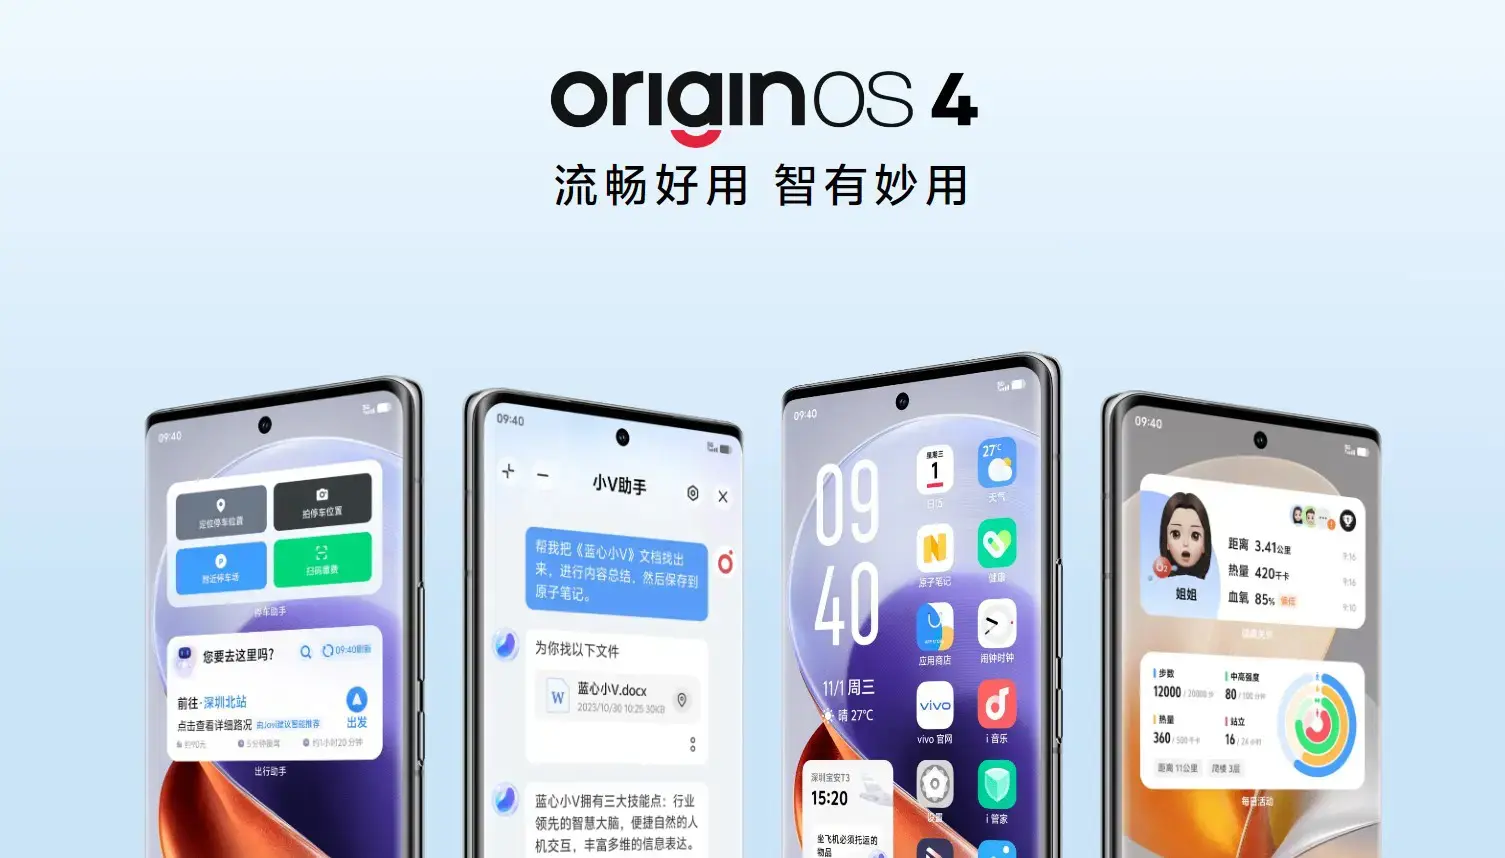 OriginOS 4 to nowe oprogramowanie układowe vivo, które optymalizuje pamięć, zmniejsza zużycie energii i poprawia czas pracy bez przestojów